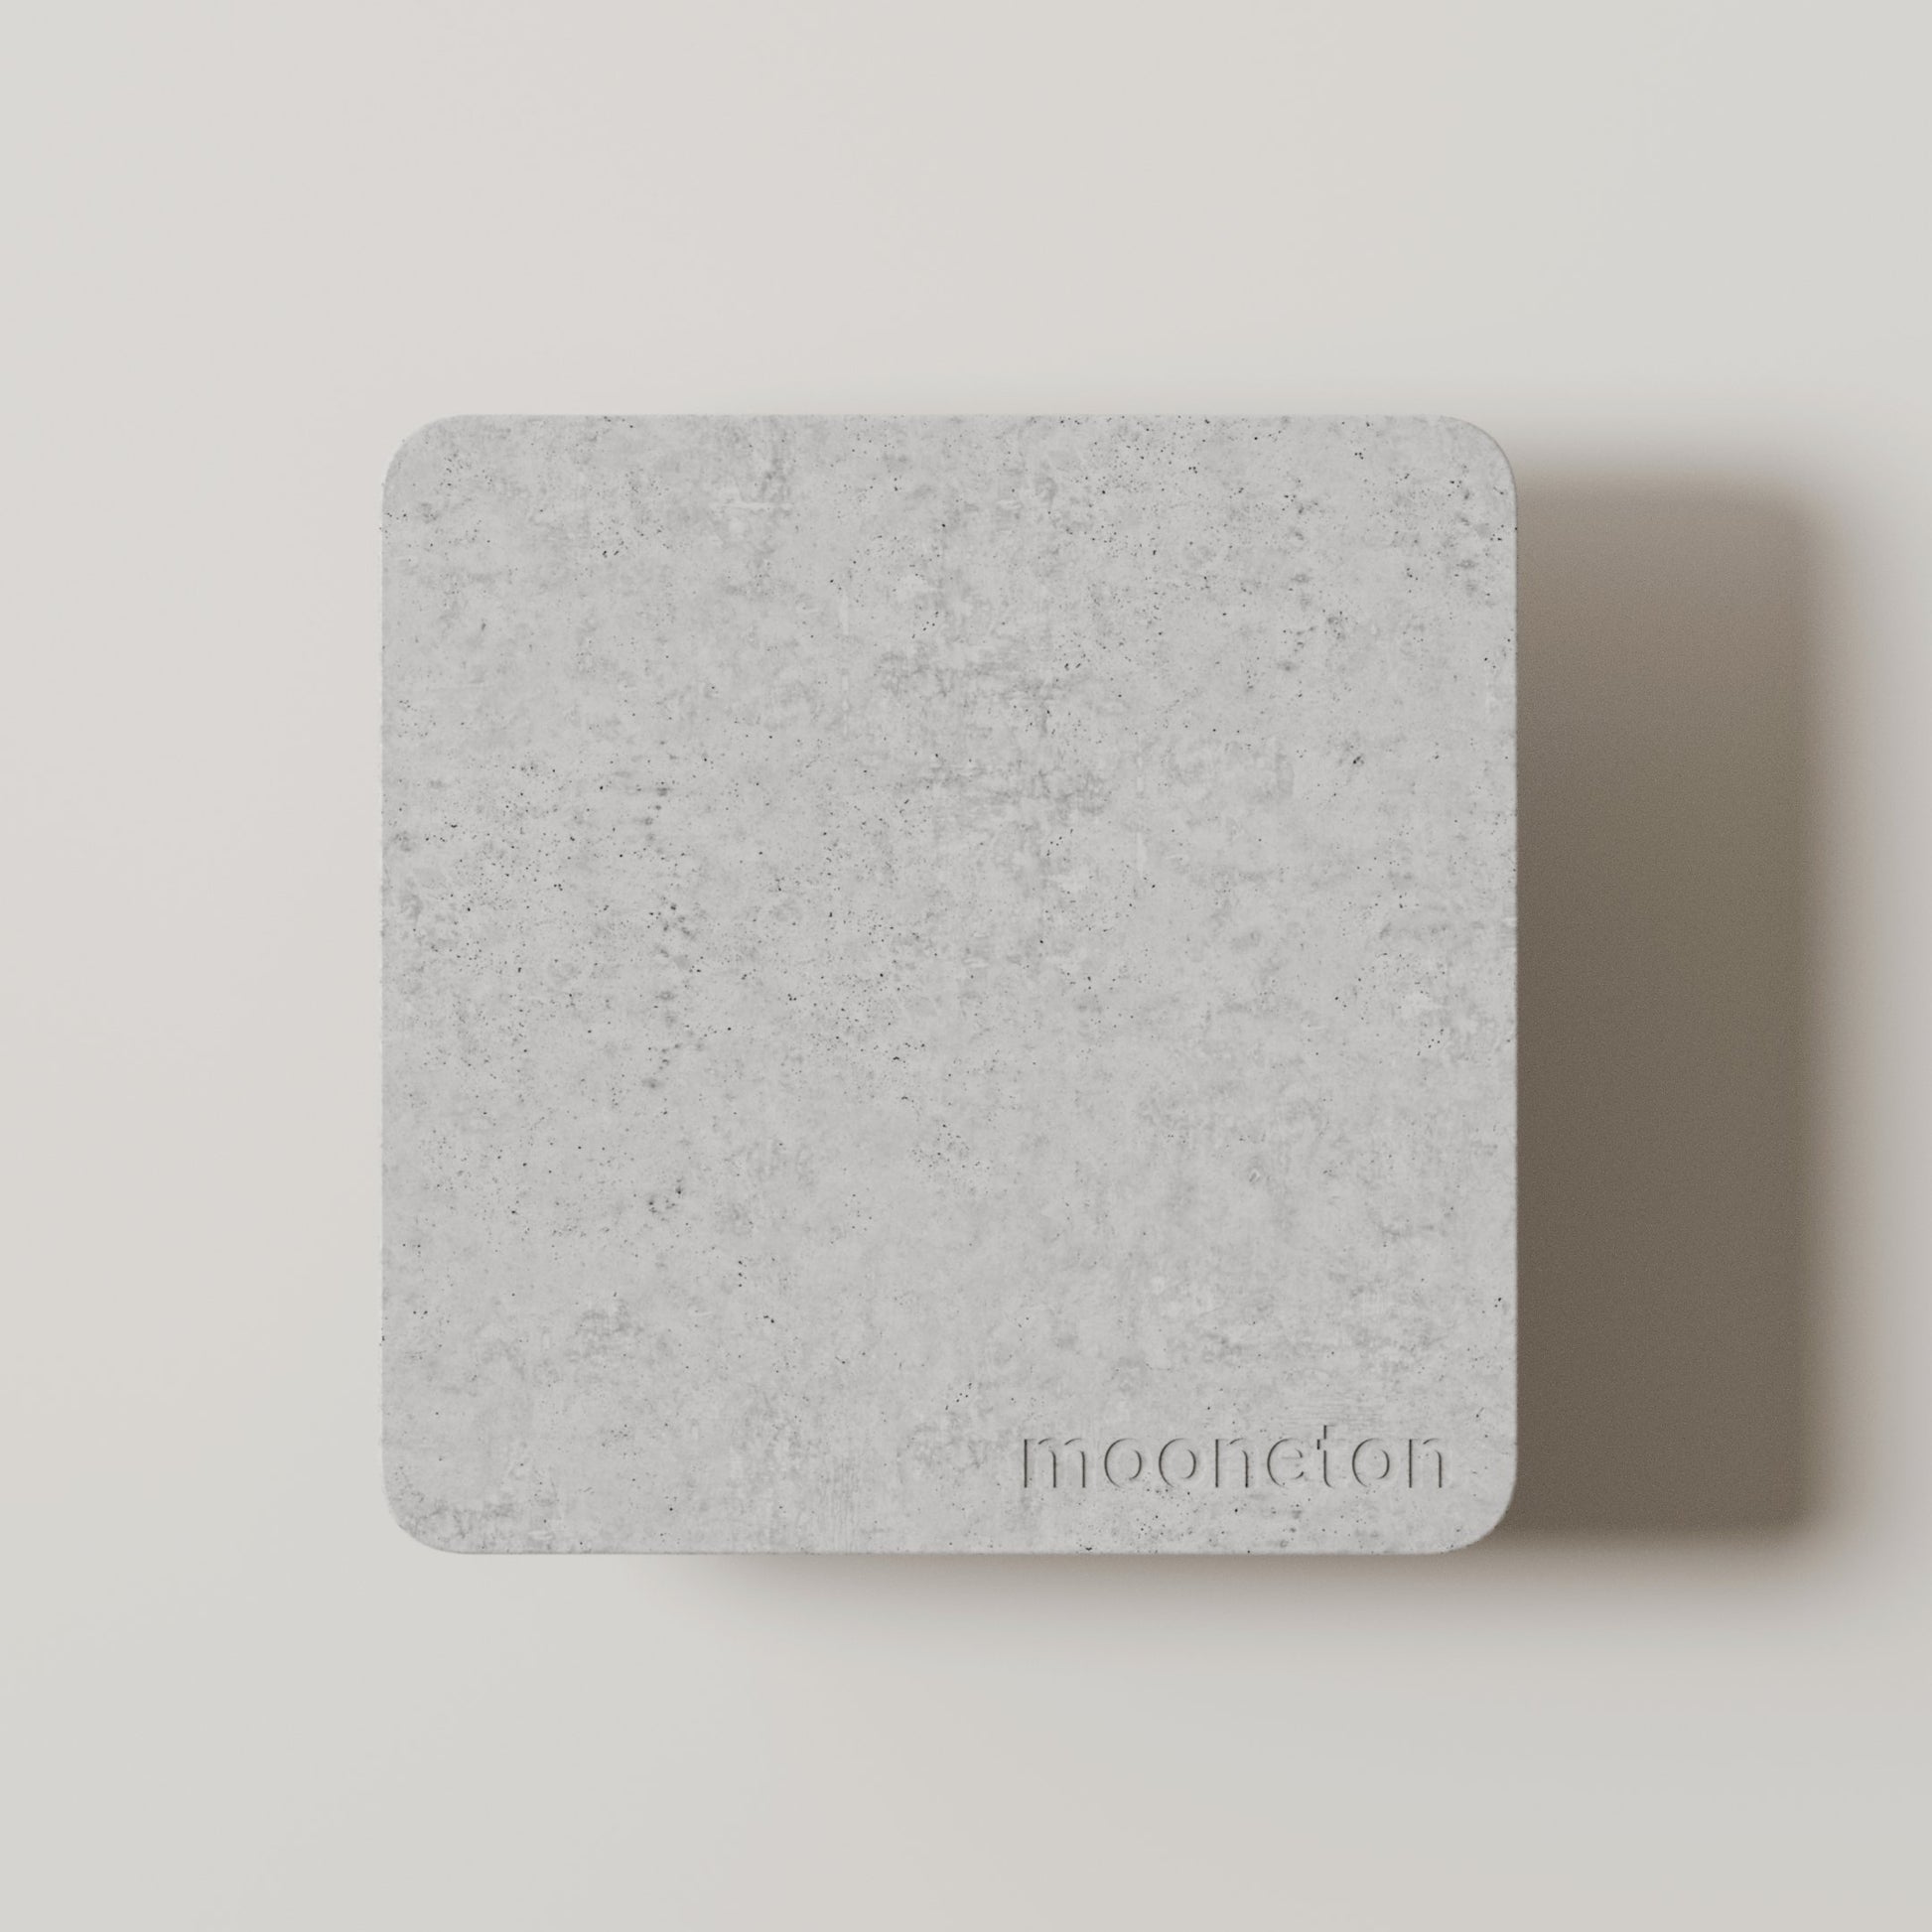 Mooneton farebná vzorka vysokopevnostného betónu - šedá